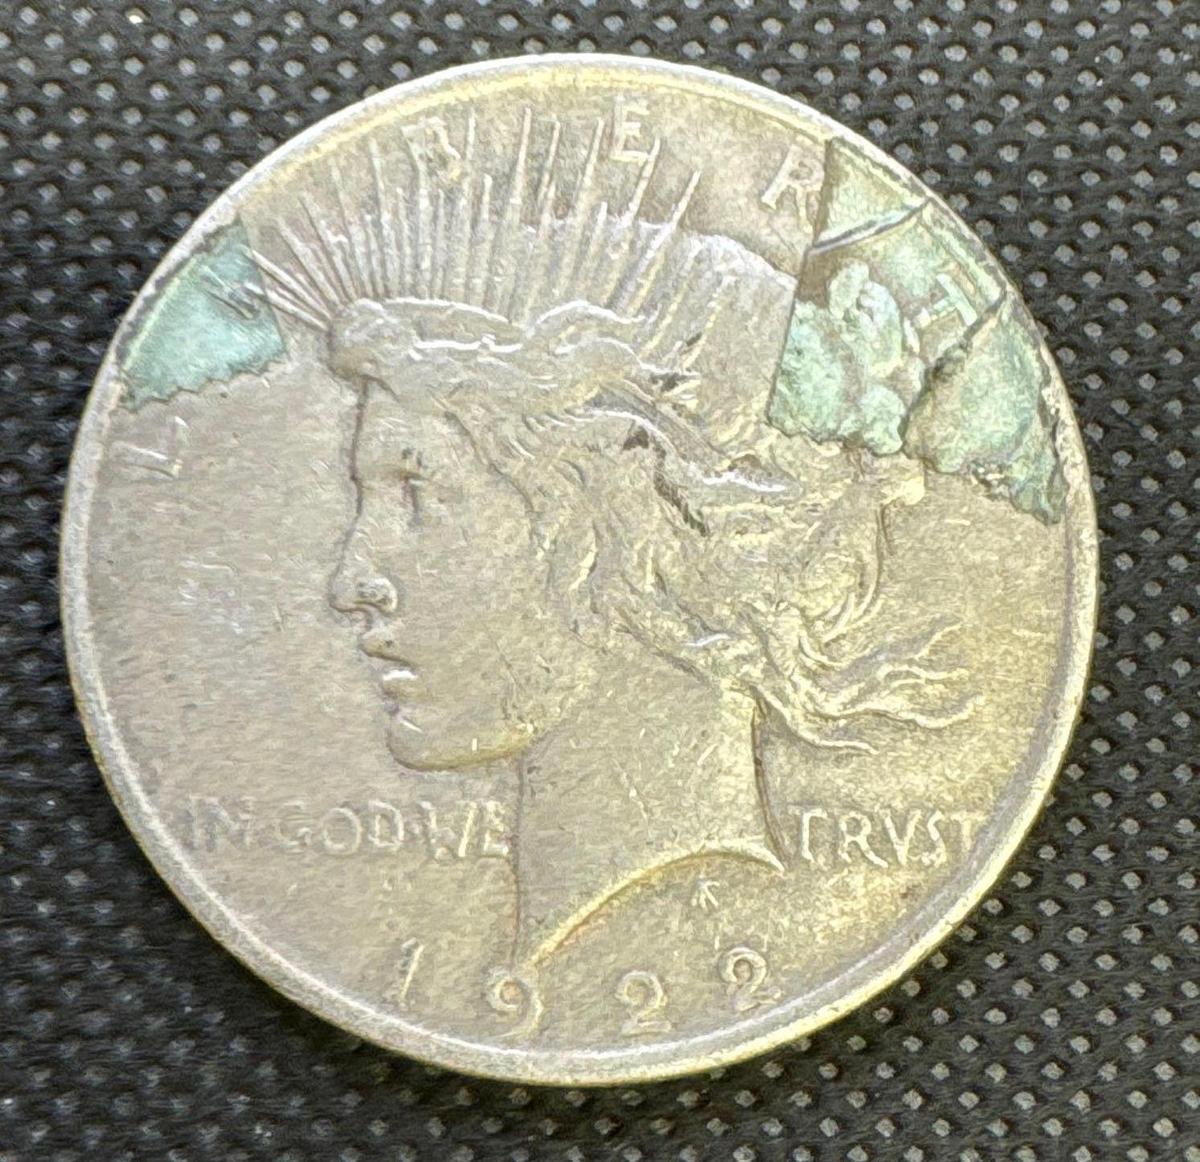 1922 Silver Peace Dollar 90% Silver Coin 0.94 Oz